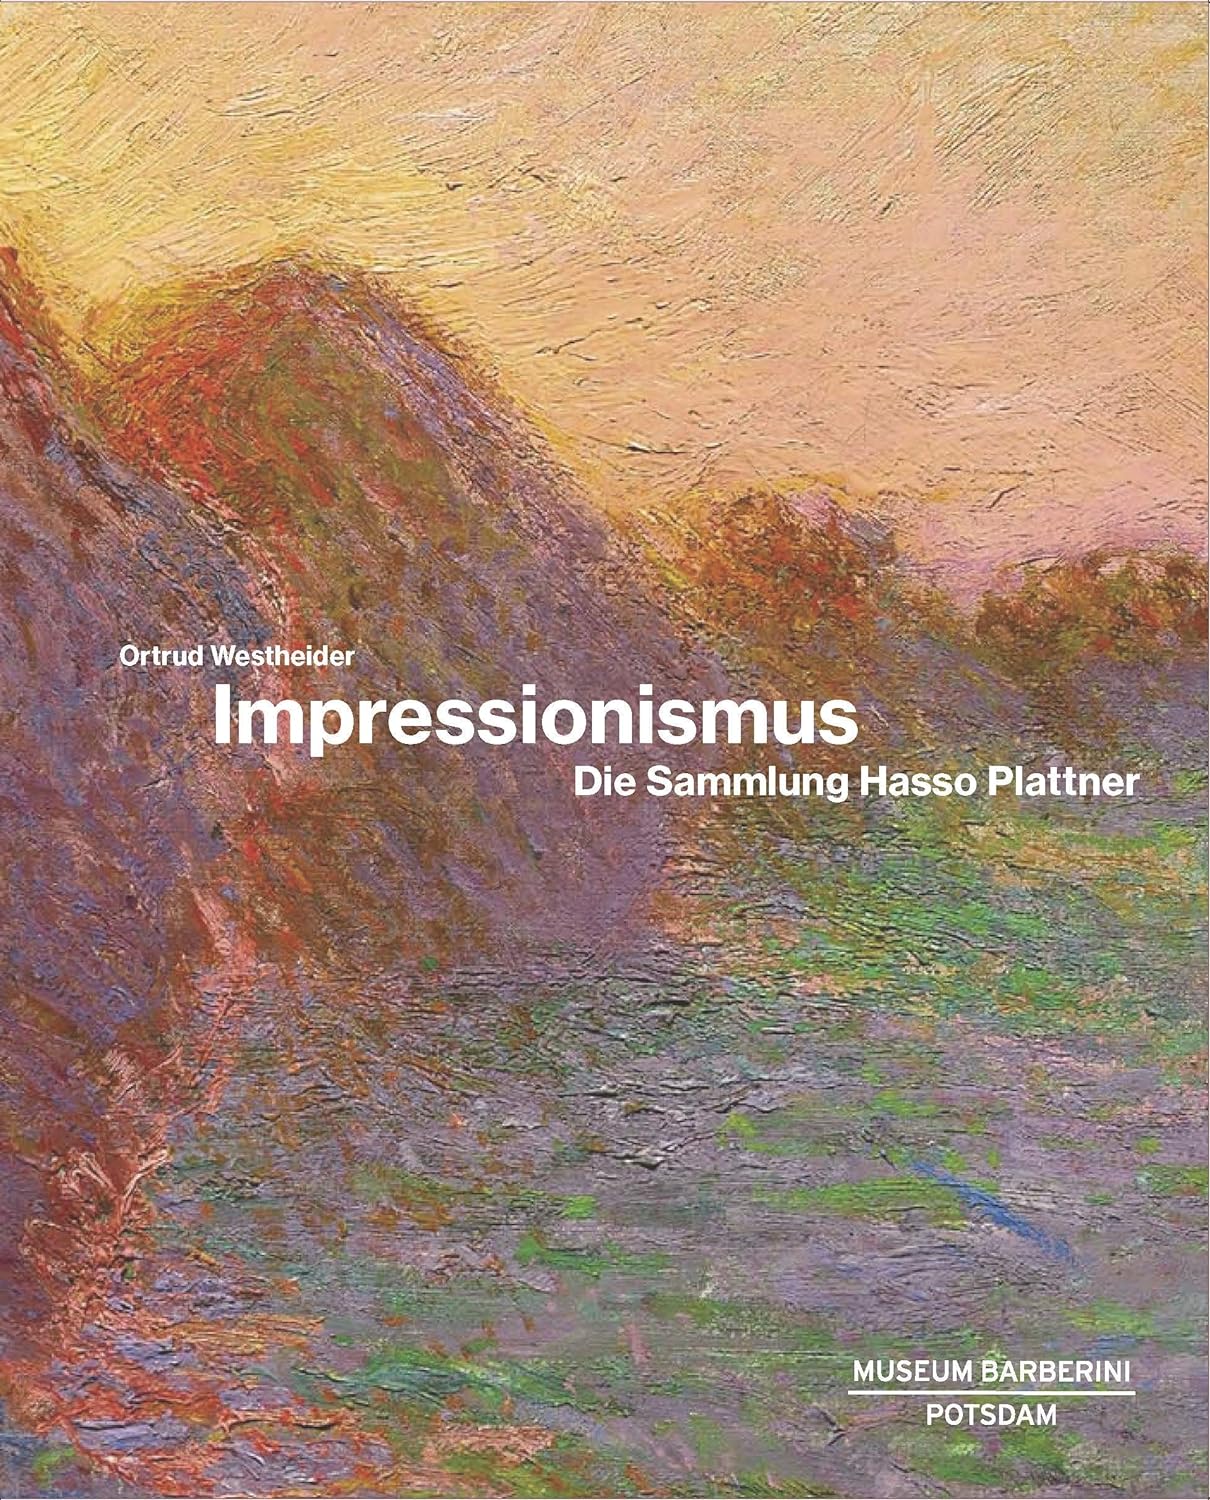 Impressionismus: Die Sammlung Hasso Plattner, von Ortrud Westheider (Museum Barberini)